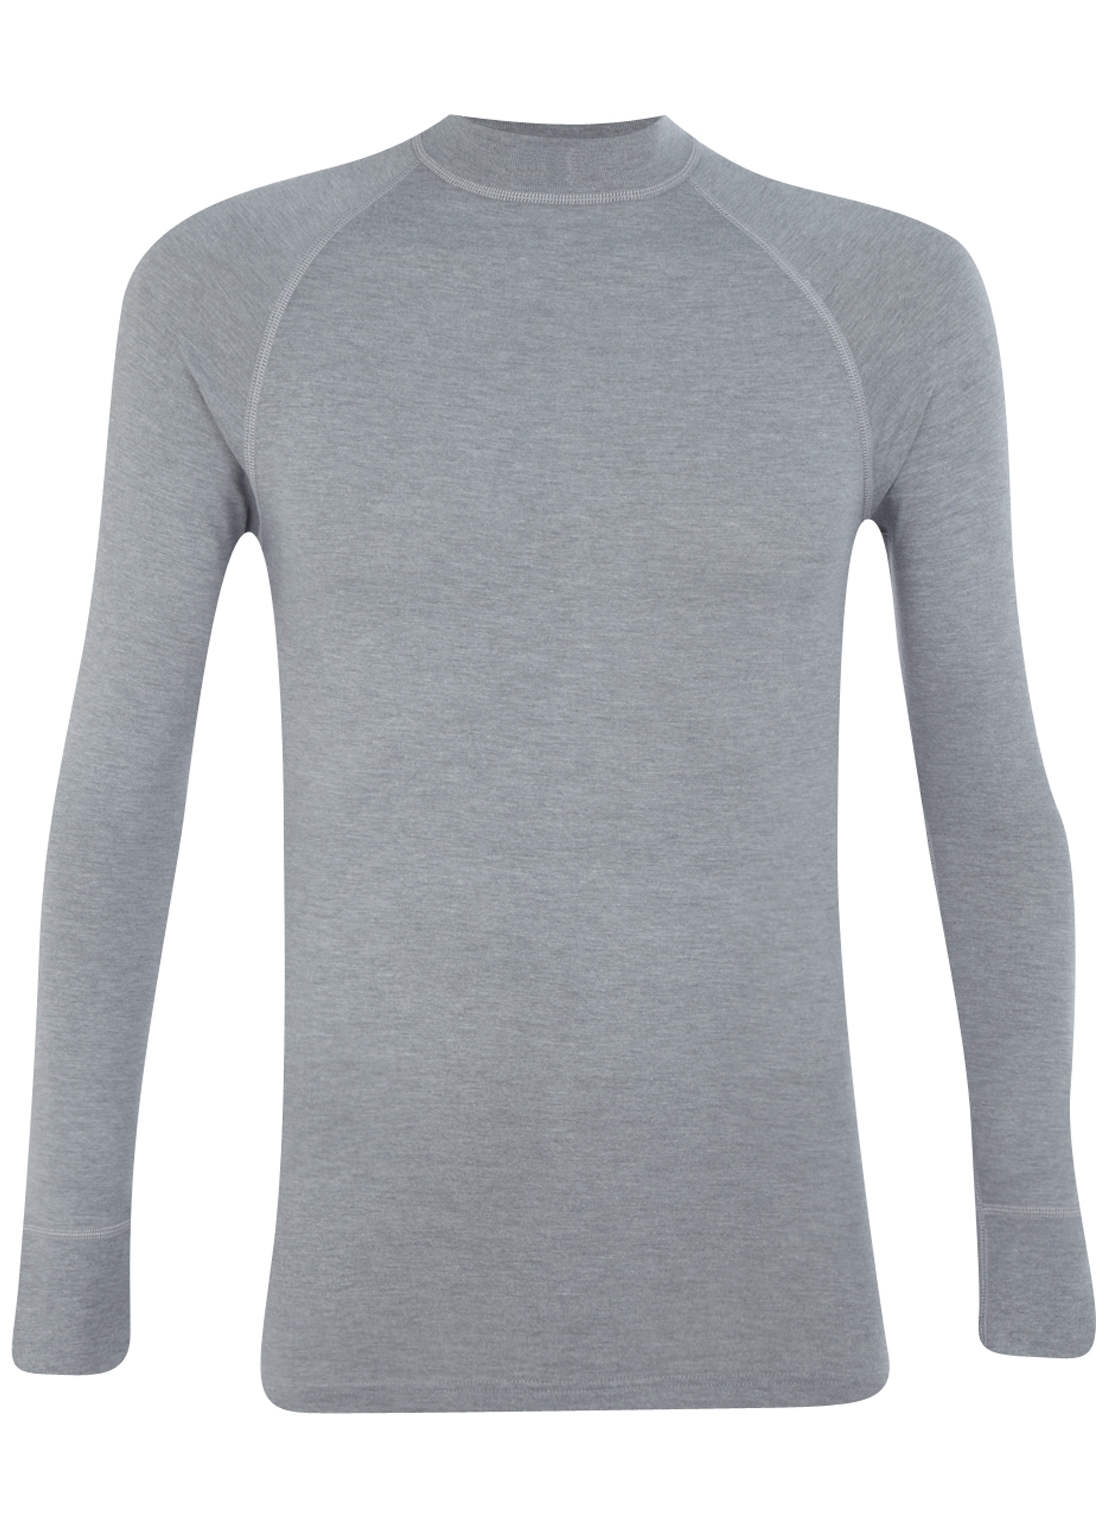 RJ Bodywear, thermo T-shirt lange mouw, grijs van kantoor artikelen tip.